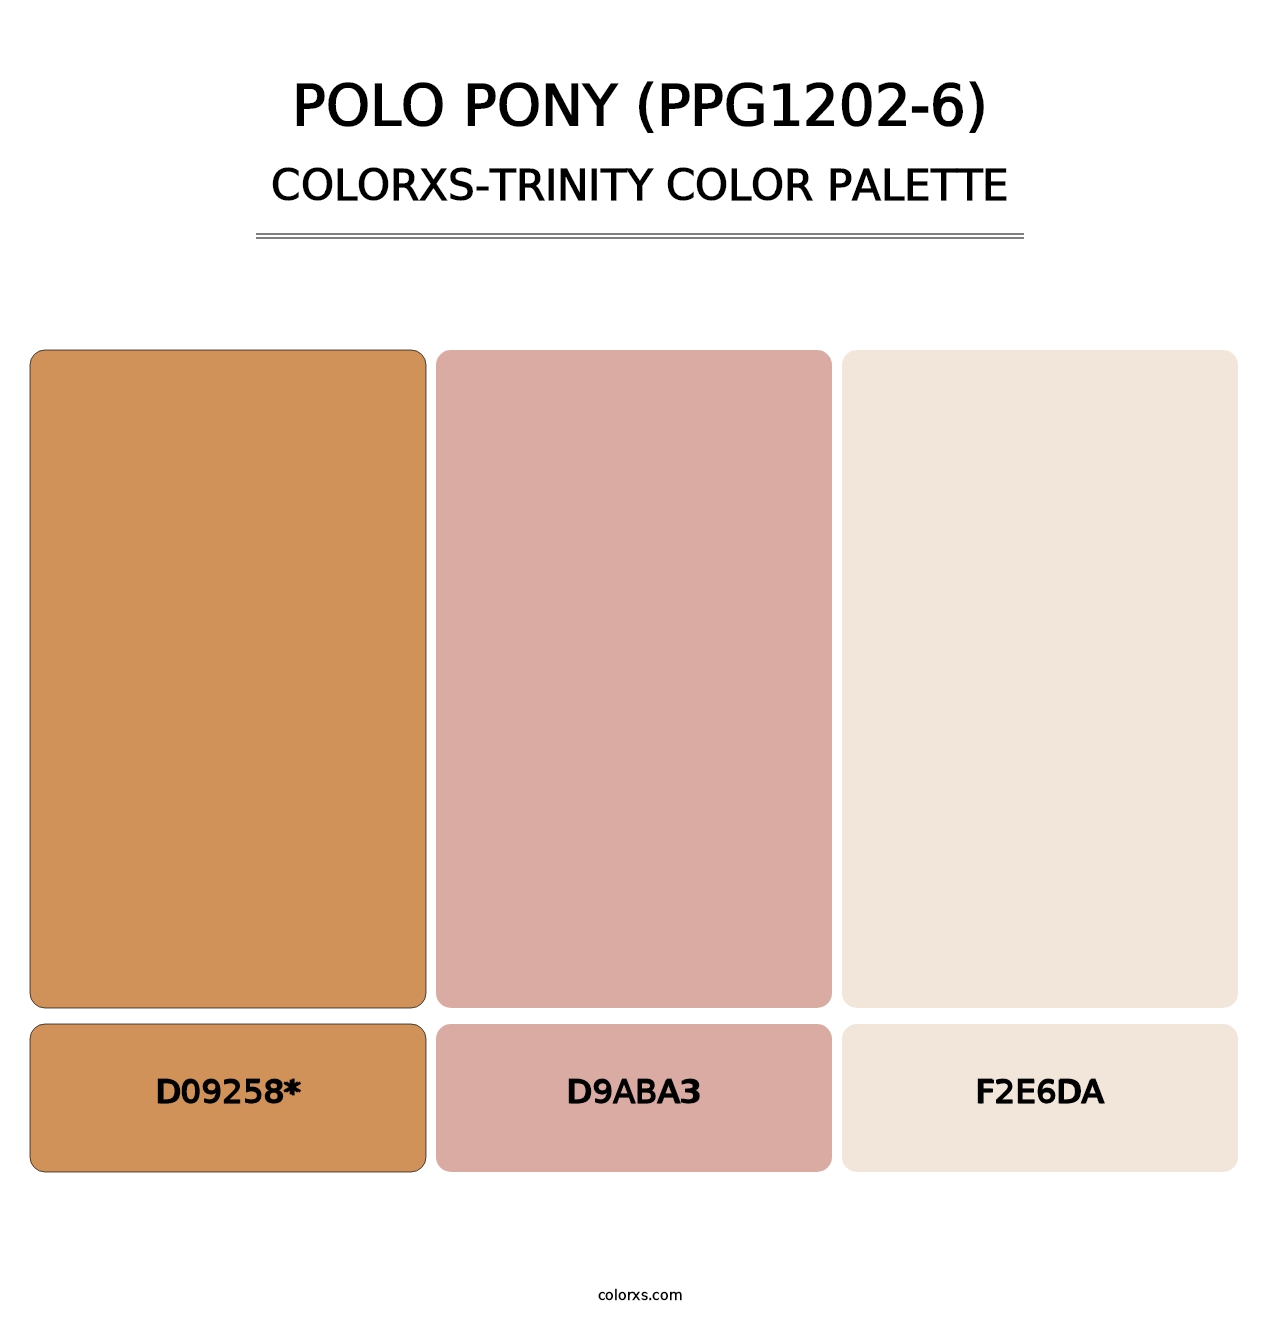 Polo Pony (PPG1202-6) - Colorxs Trinity Palette